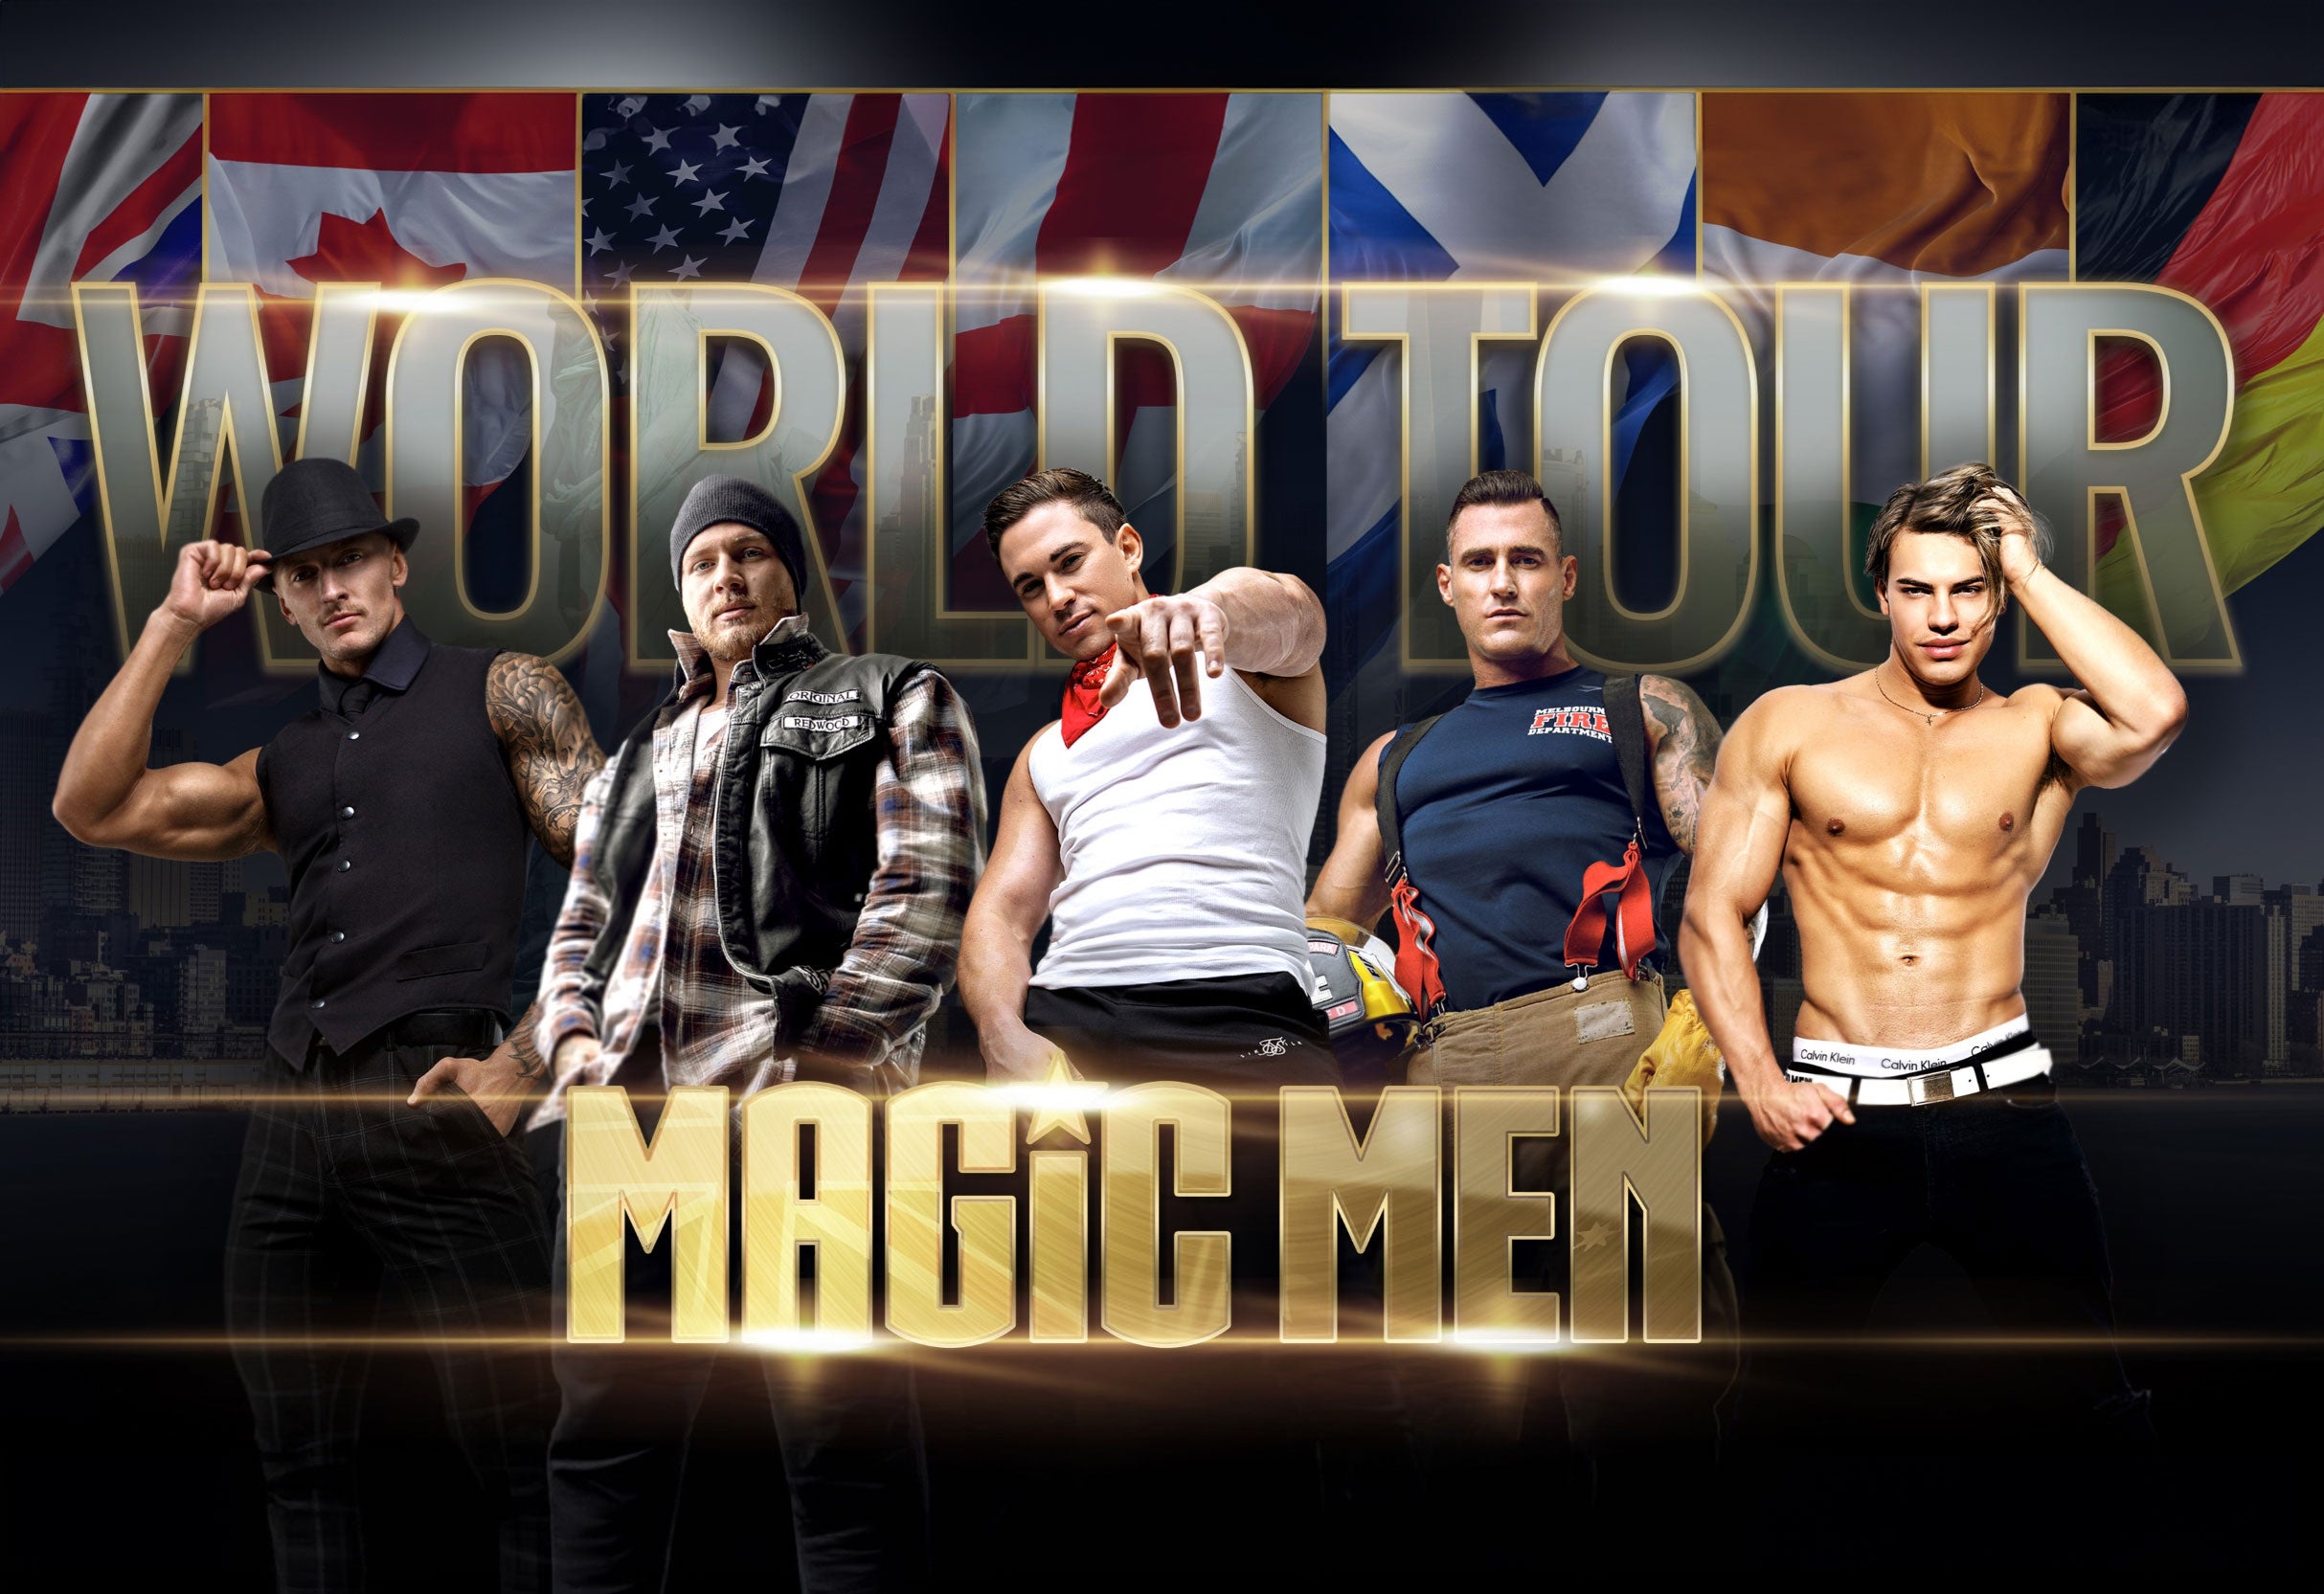 Magic Men Australia - 18+ With Valid ID at The Magnolia